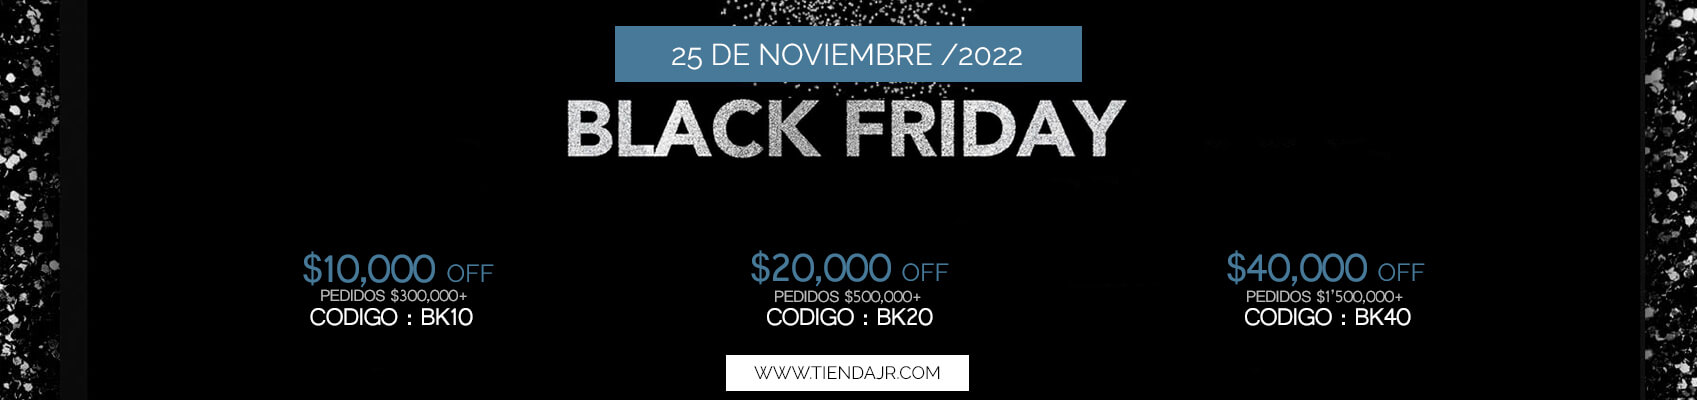 Promociones online en black friday 2023 Colombia